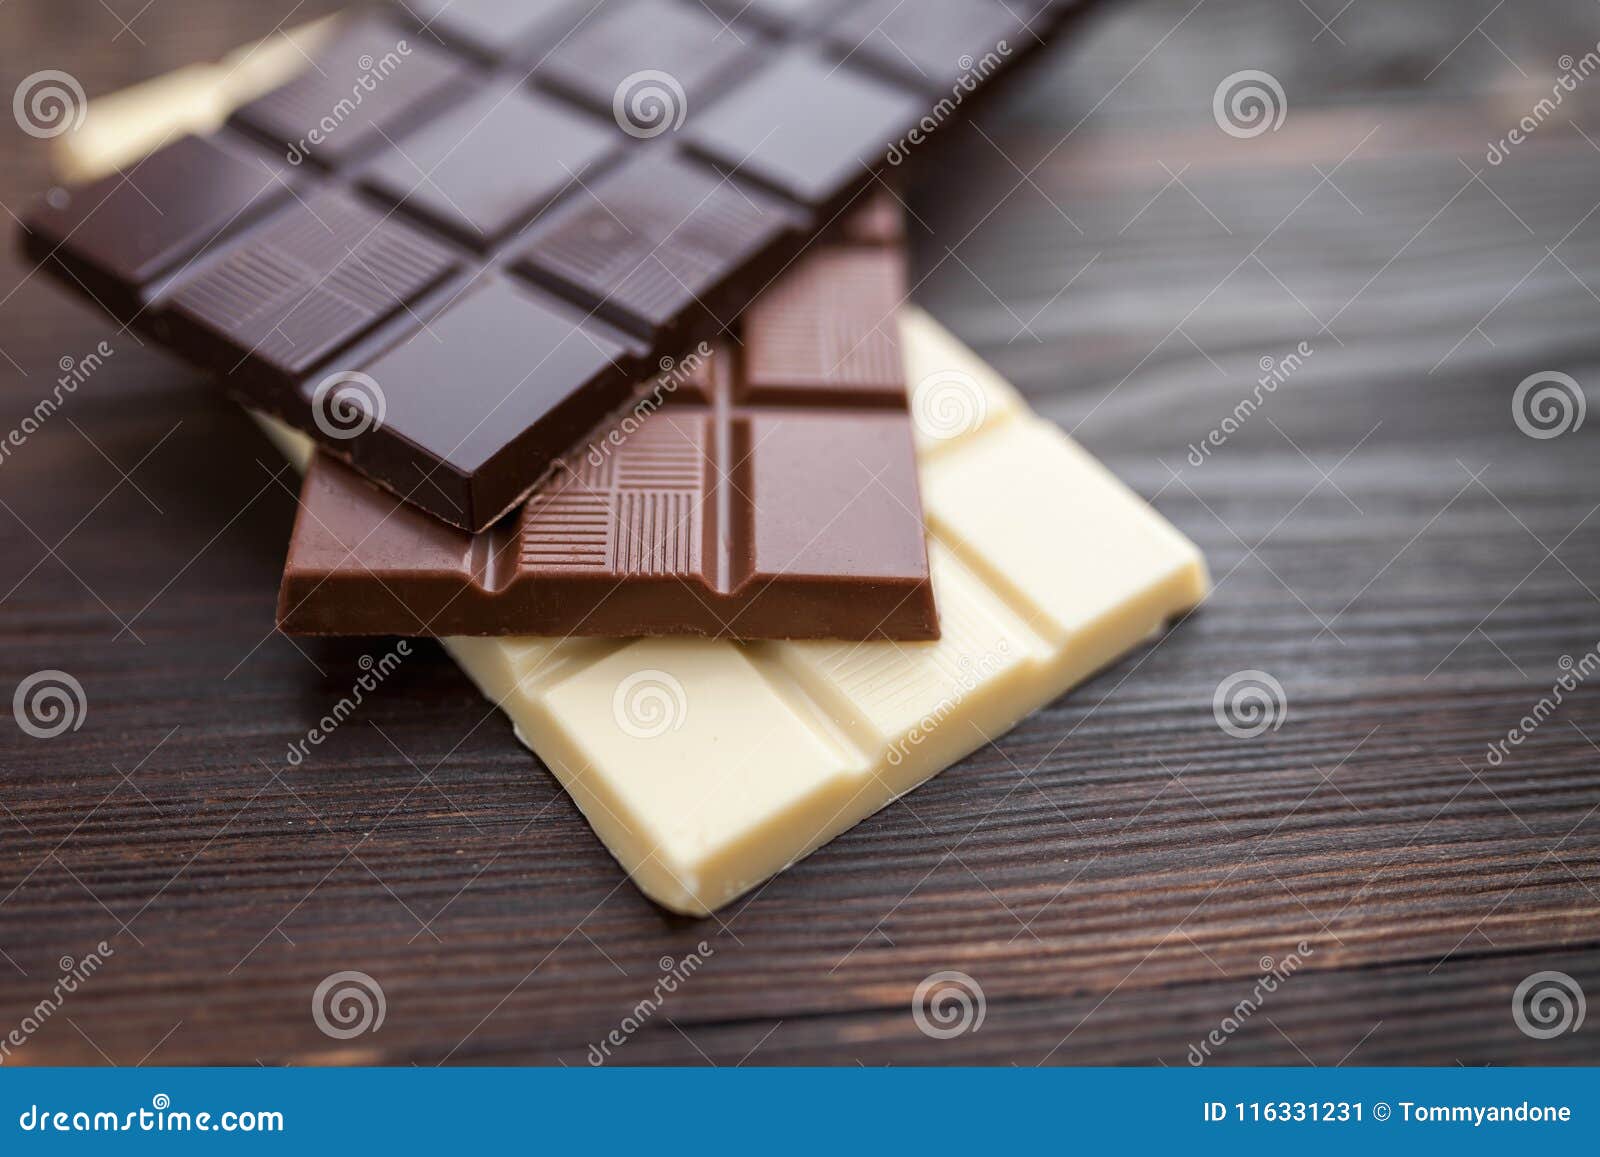 Очень шоколад. Вкусный шоколад. Шоколад Делишес. Очень вкусный шоколад. Очень вкусная шоколадка.